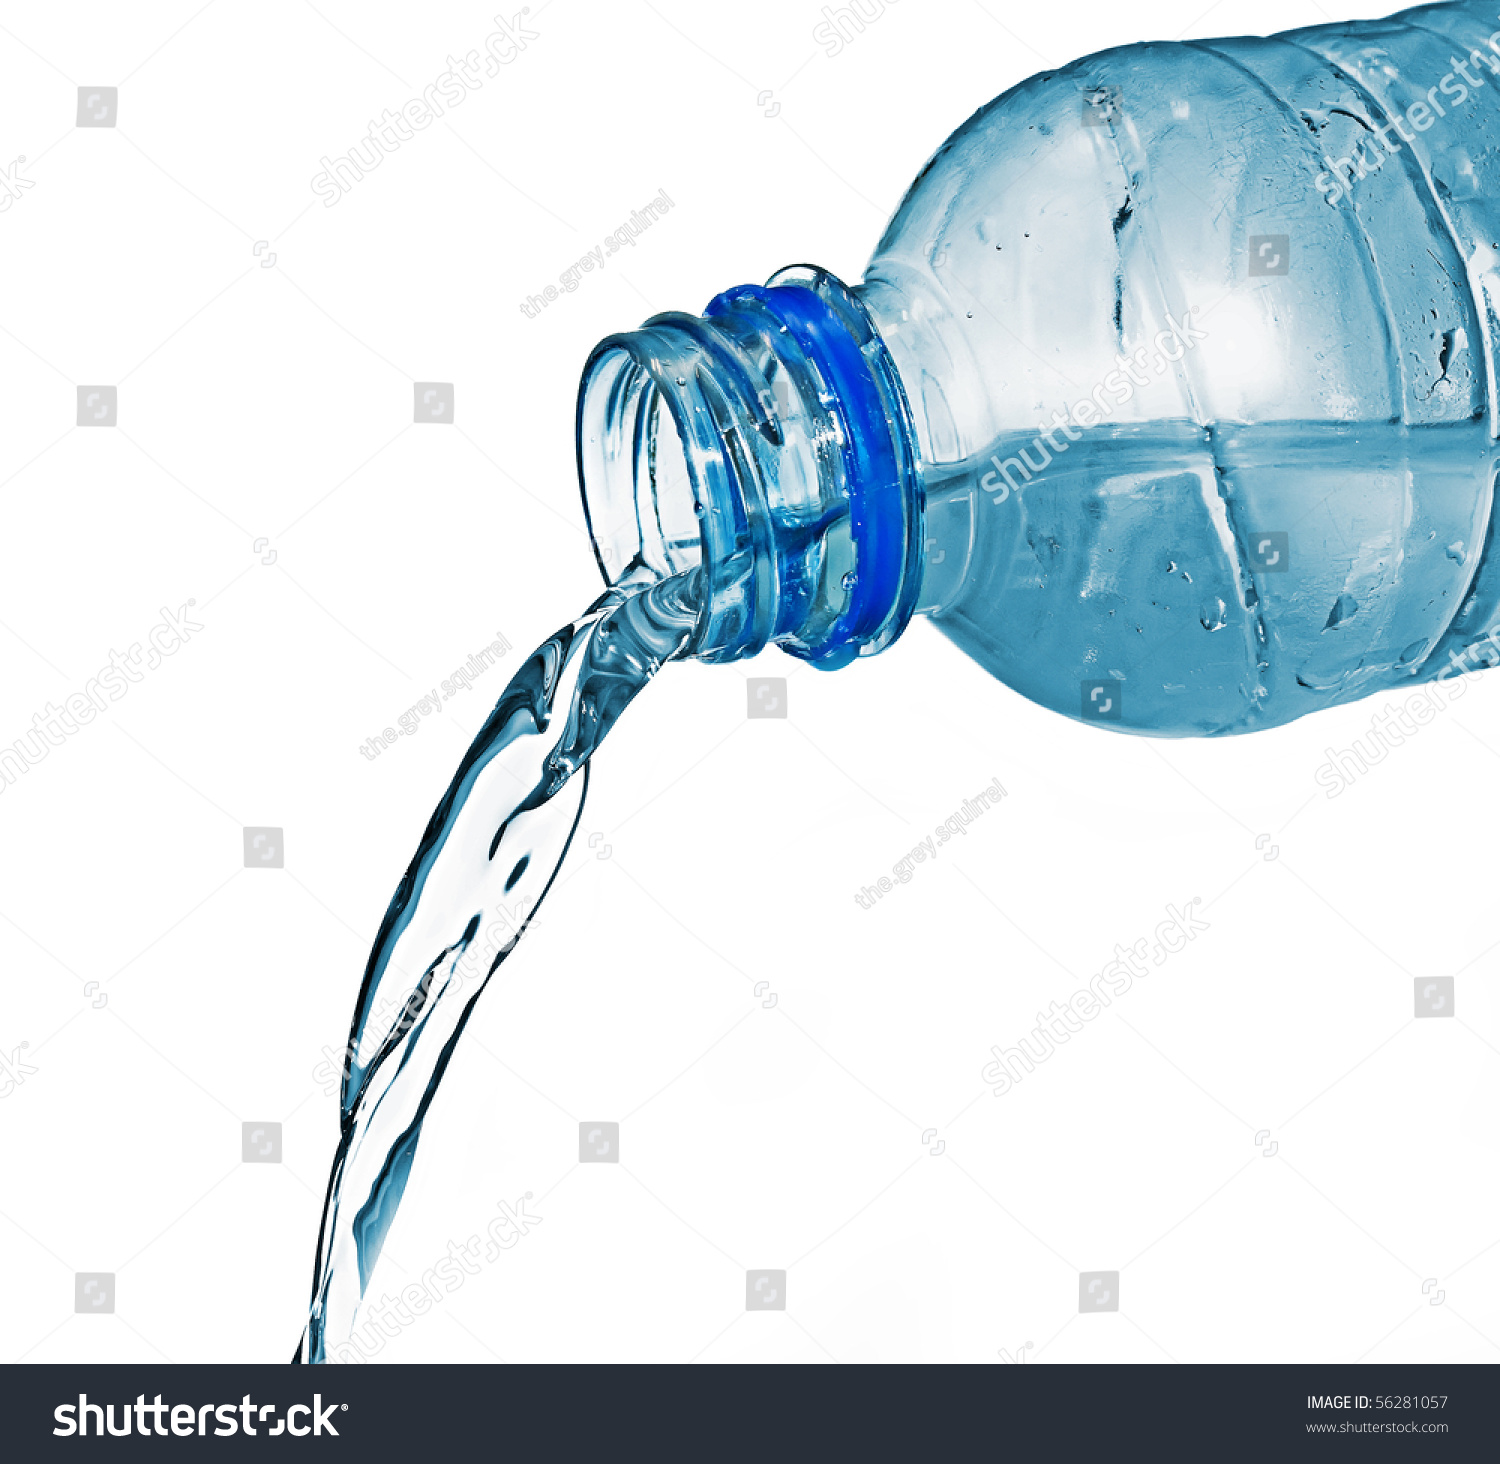 Вода льется из бутылки